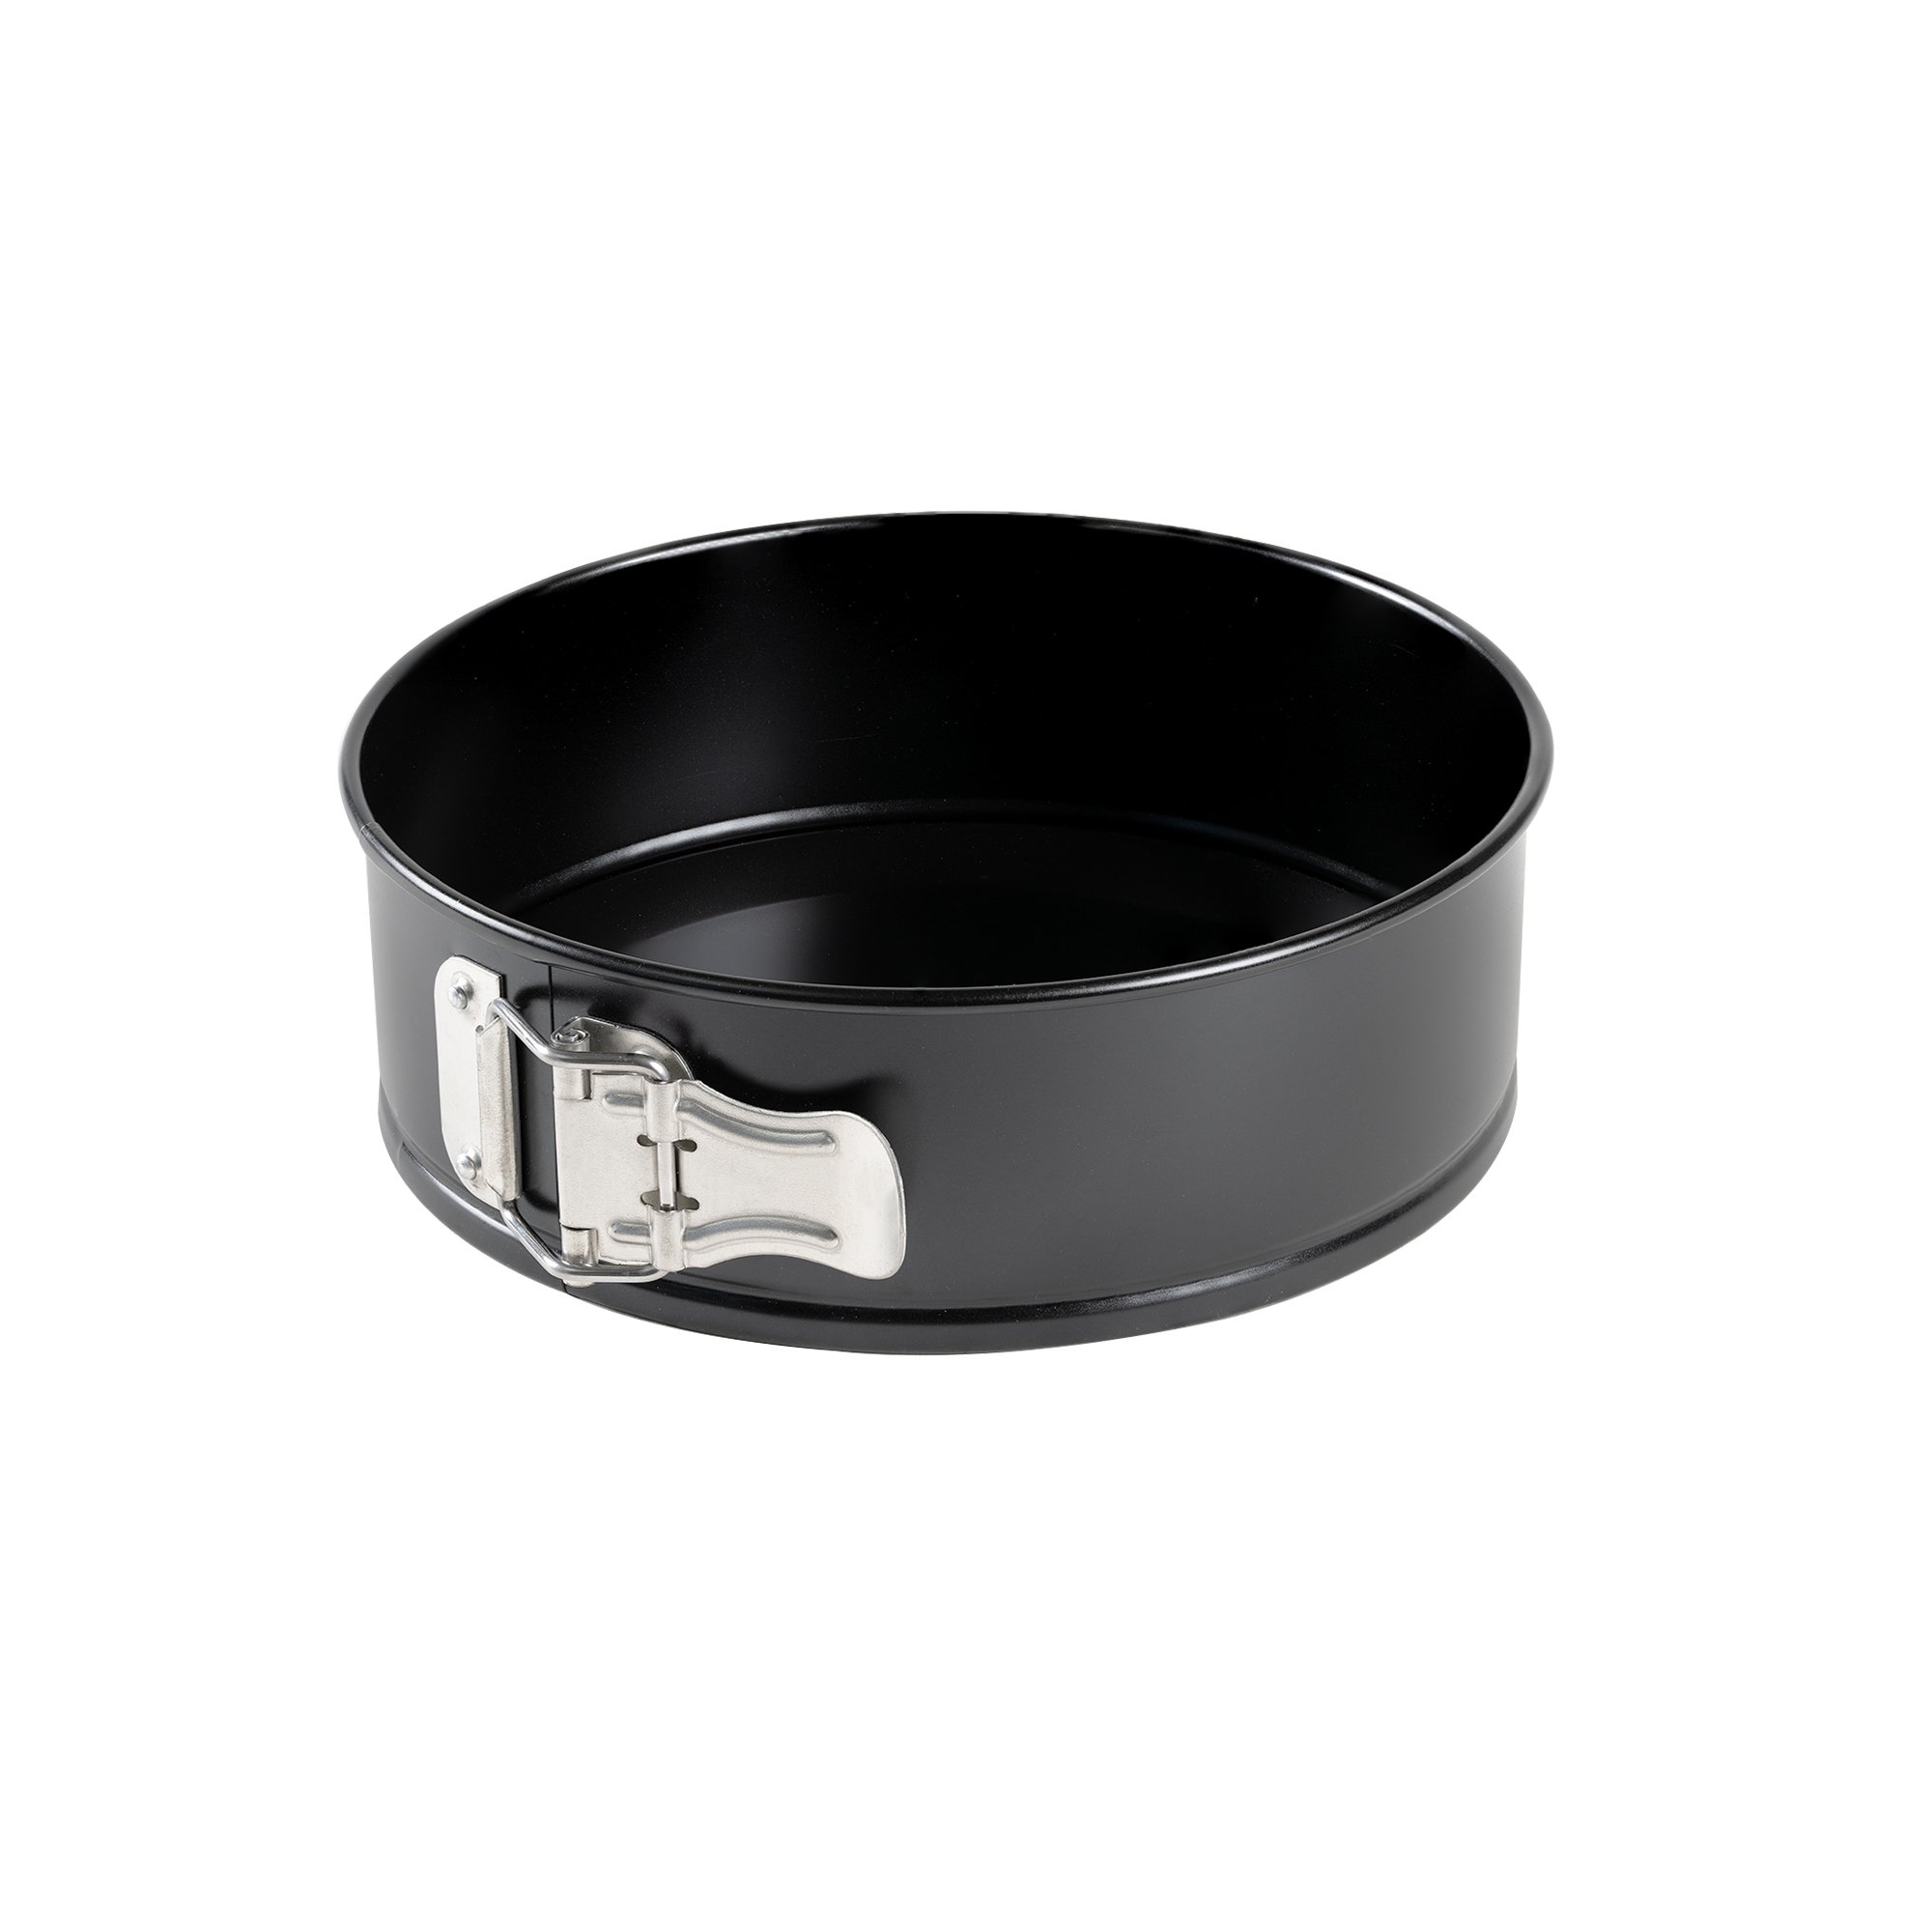 Freyersbacher® Springform Pan 16 cm, Round Cake Tin | Loose Base, Non-Stick